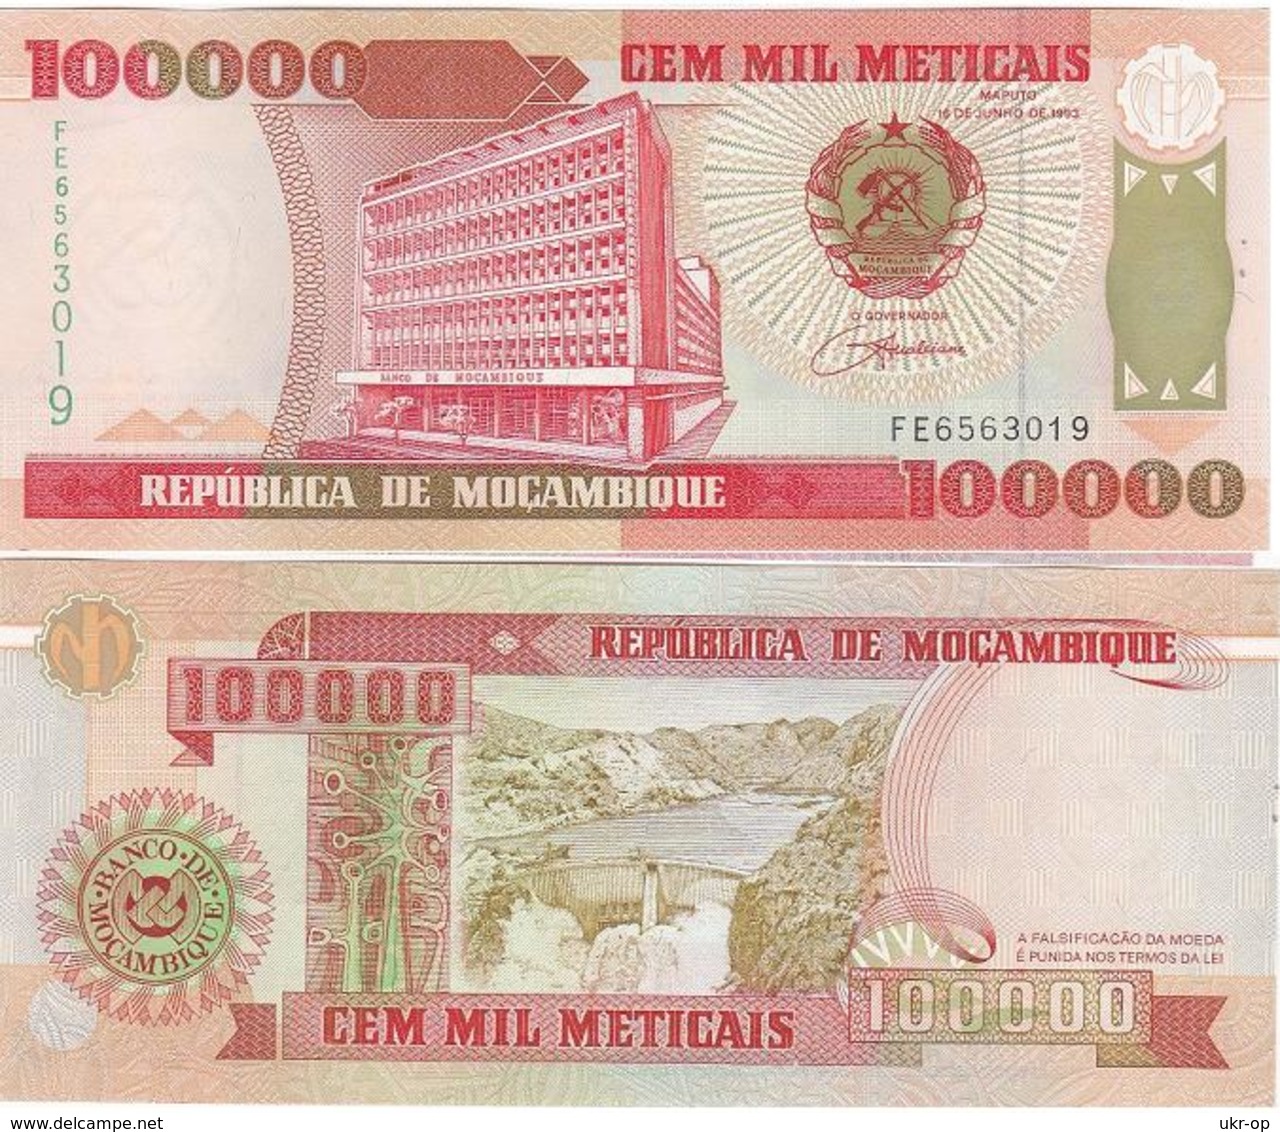 Mozambique - 100000 Meticais 1993 UNC Ukr-OP - Mozambique